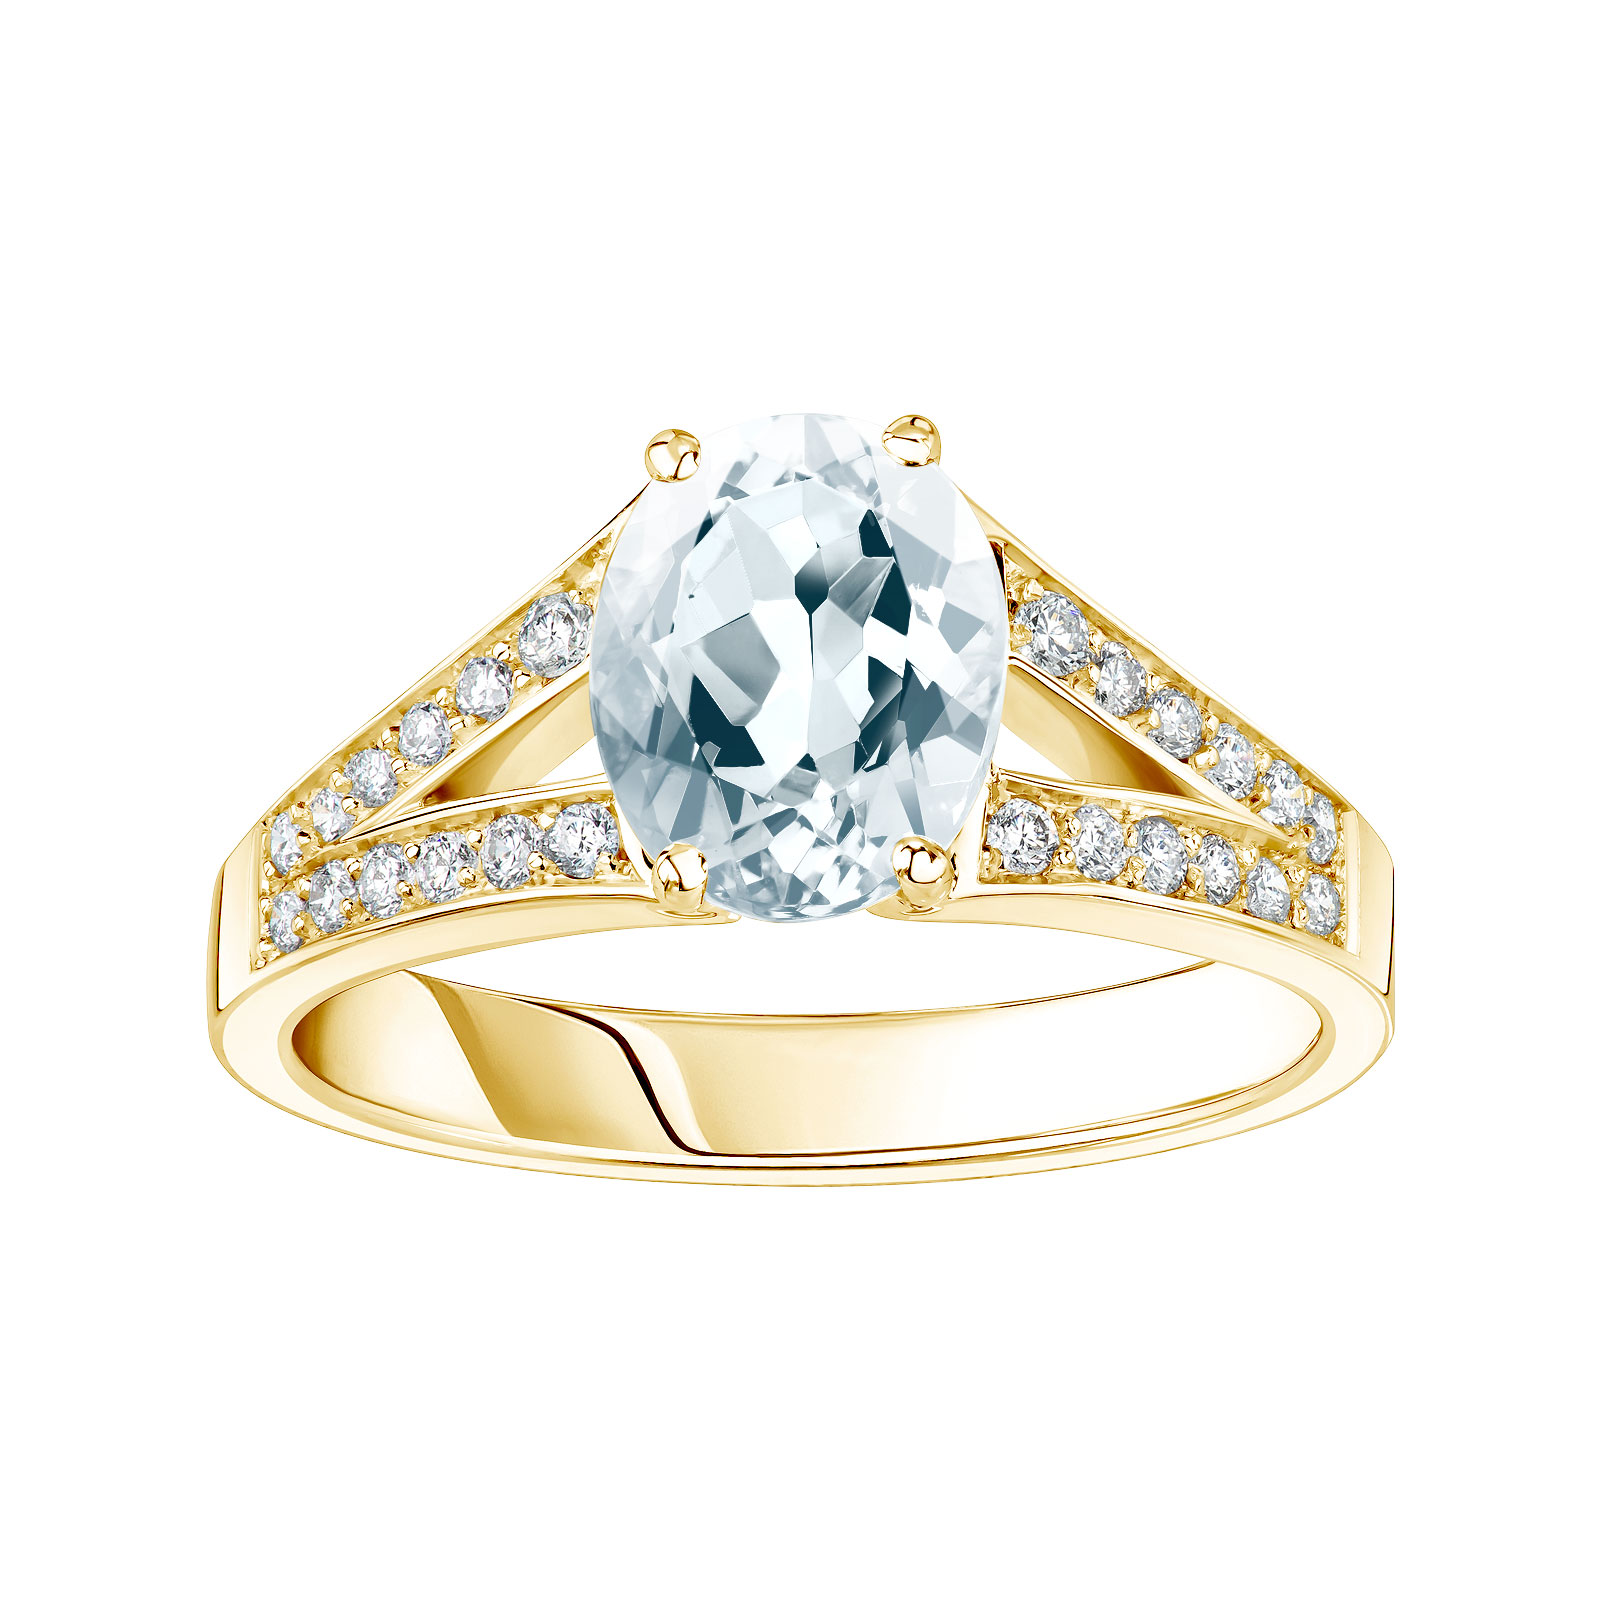 Bague Or jaune Aigue-marine et diamants Rétromantique Tiare Pavée 1